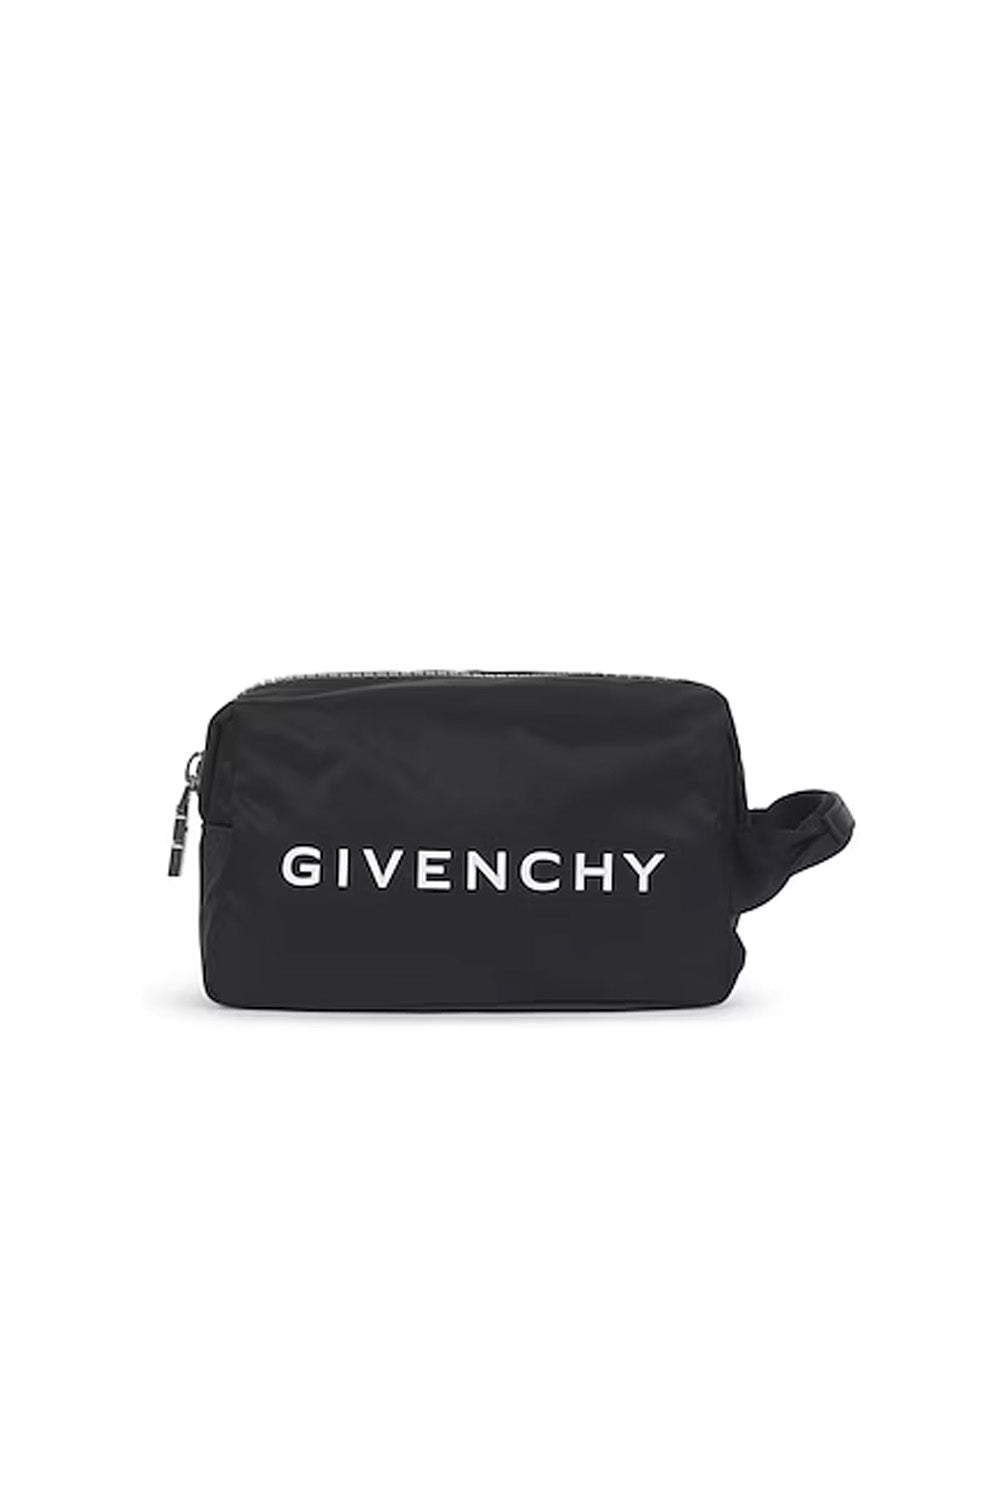 Givenchy G-zip toilet bag